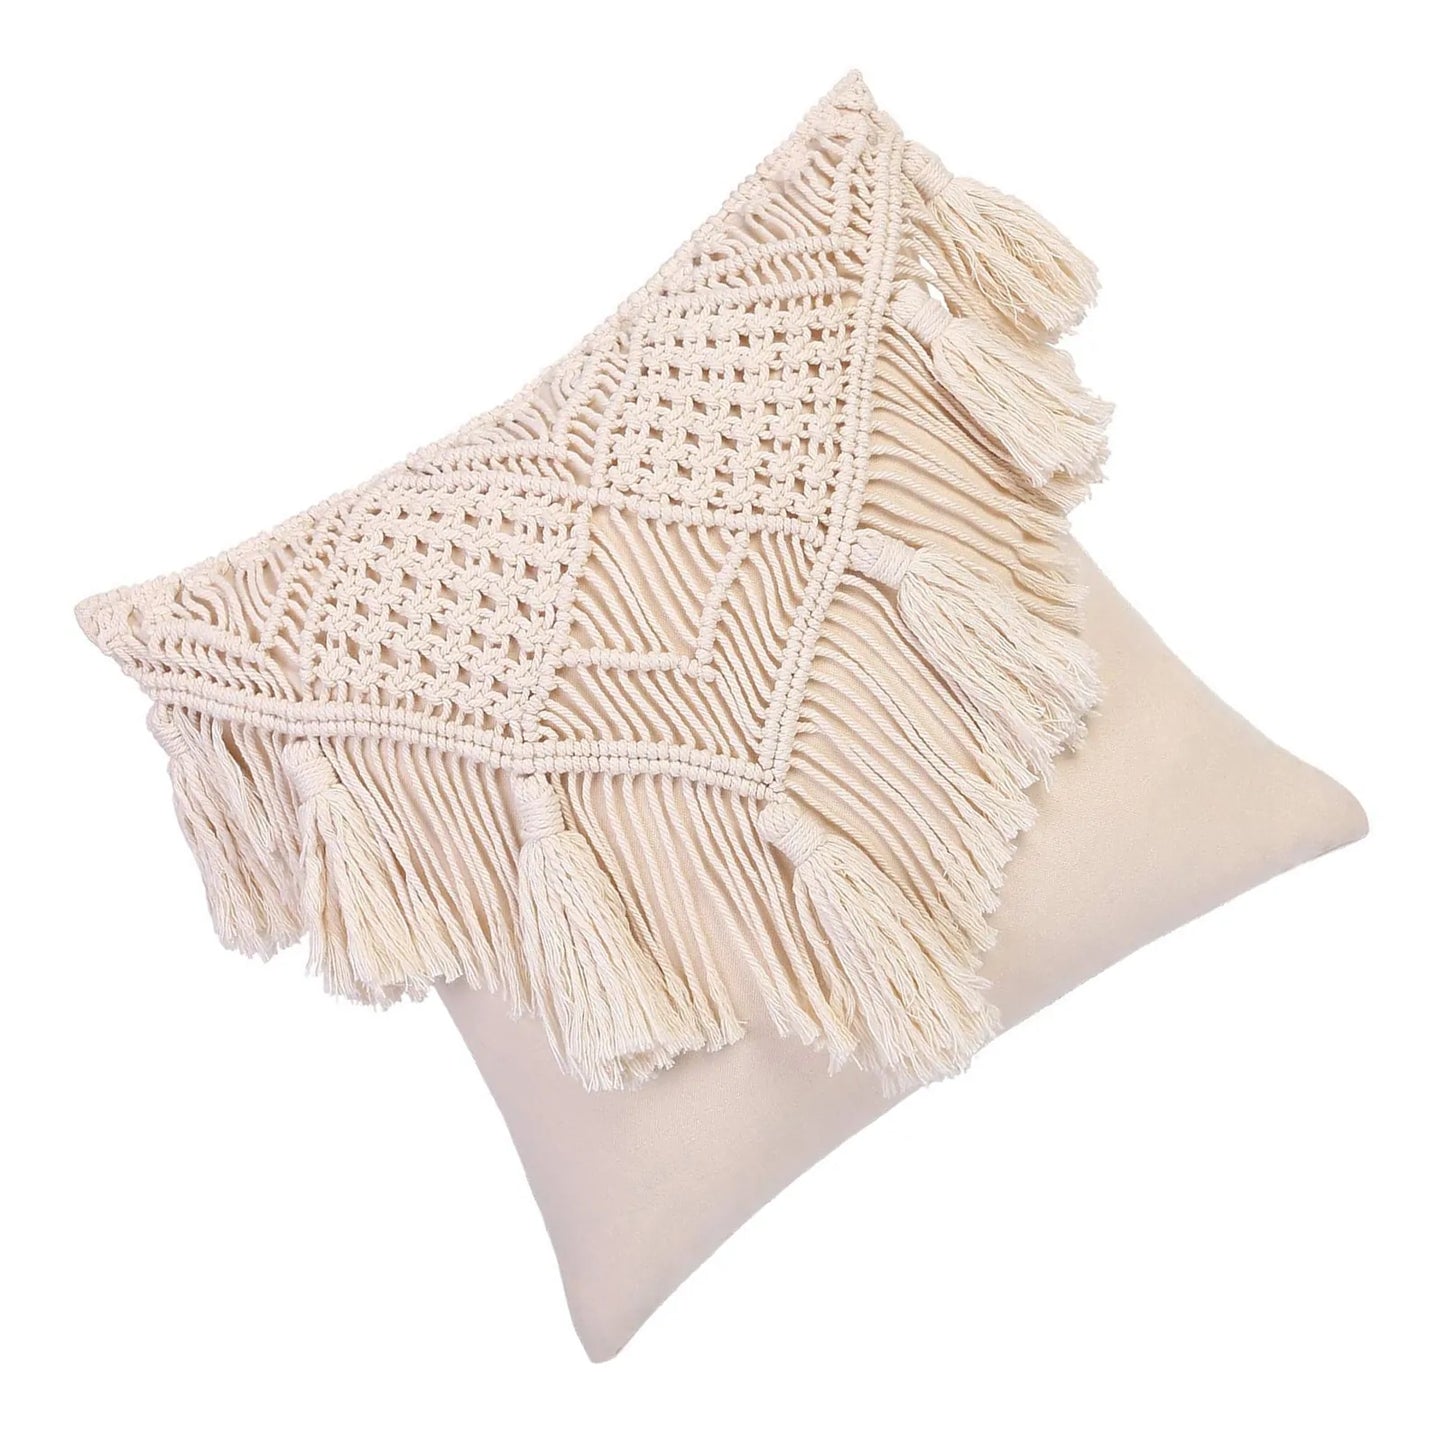 Cotton Linen Macramè hand-woven pillow cover